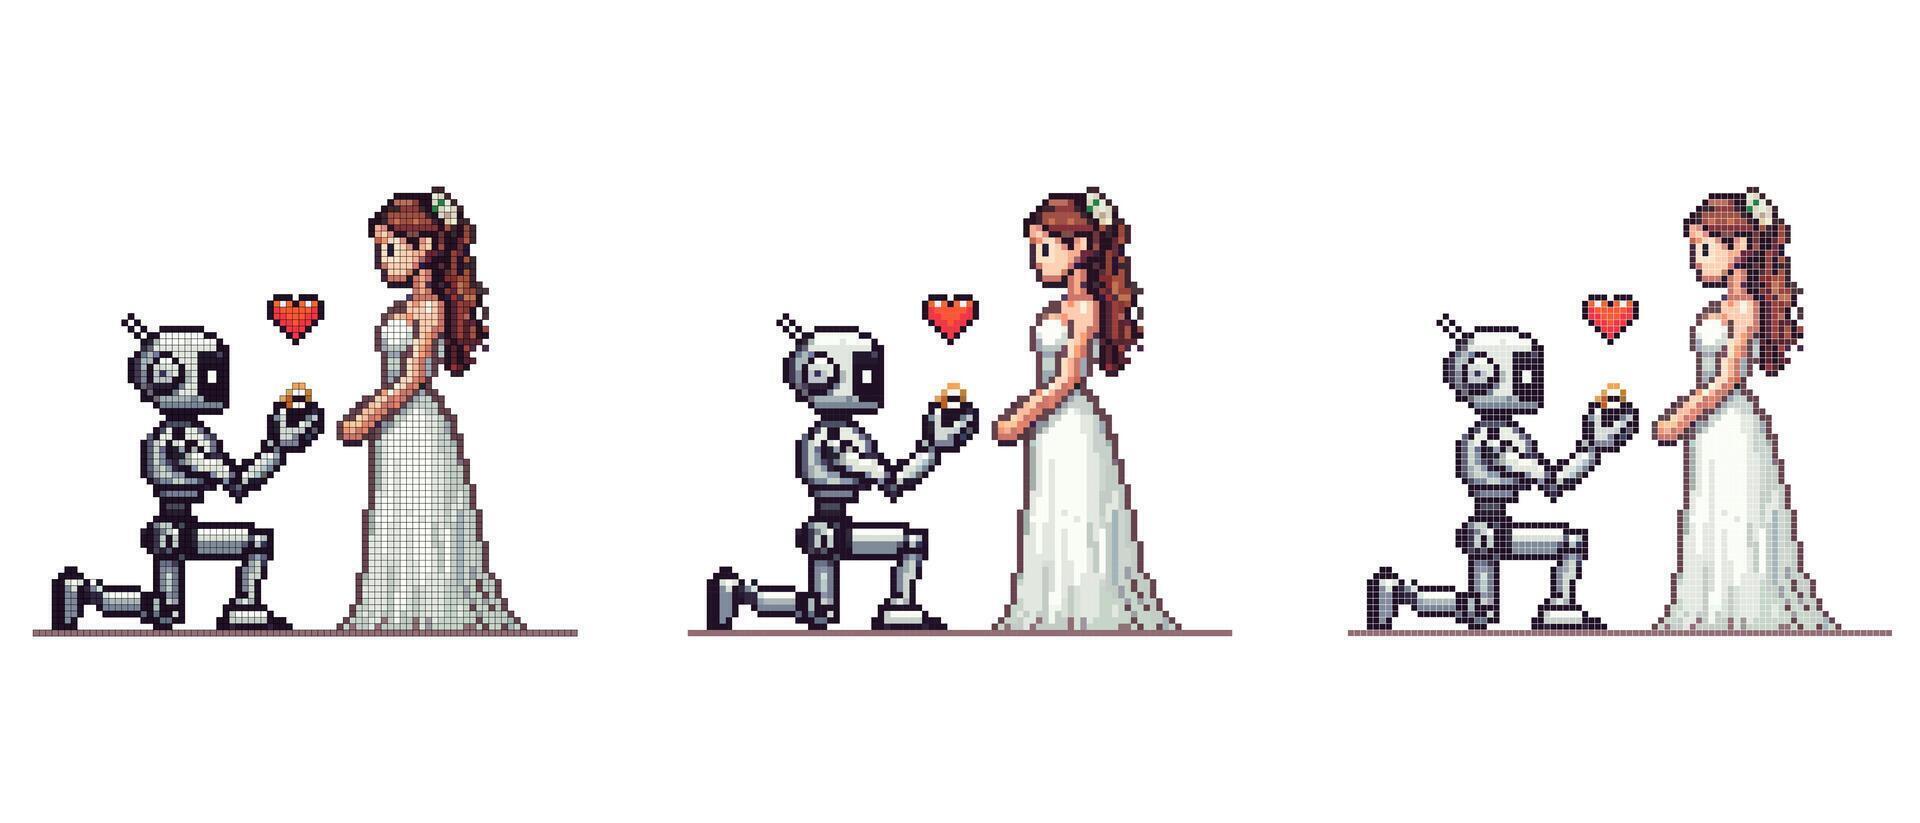 vektor pixel ikon med en robot stående på ett knä i främre av en flicka i en vit bröllop klänning, i hans händer han innehar en ringa, bröllop av en robot och en mänsklig på en vit bakgrund